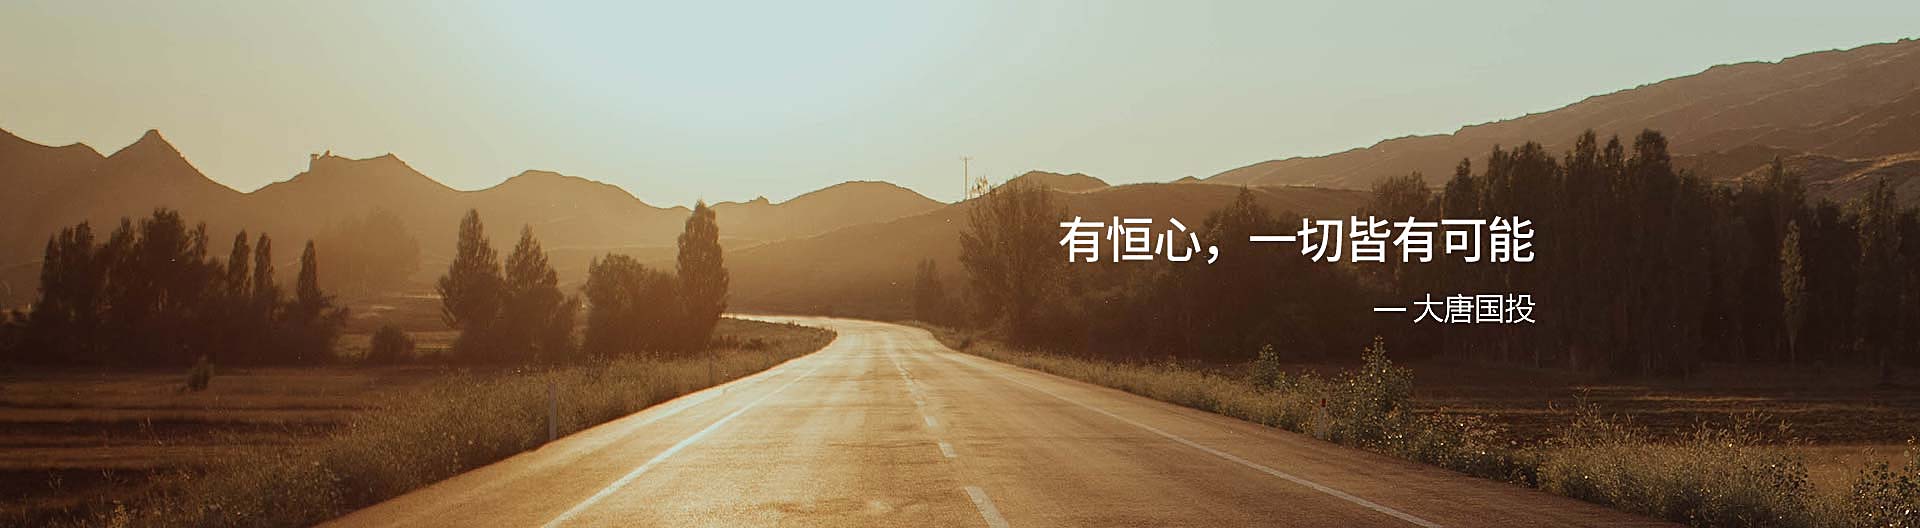 北京大唐国投餐饮设计公司banner-4